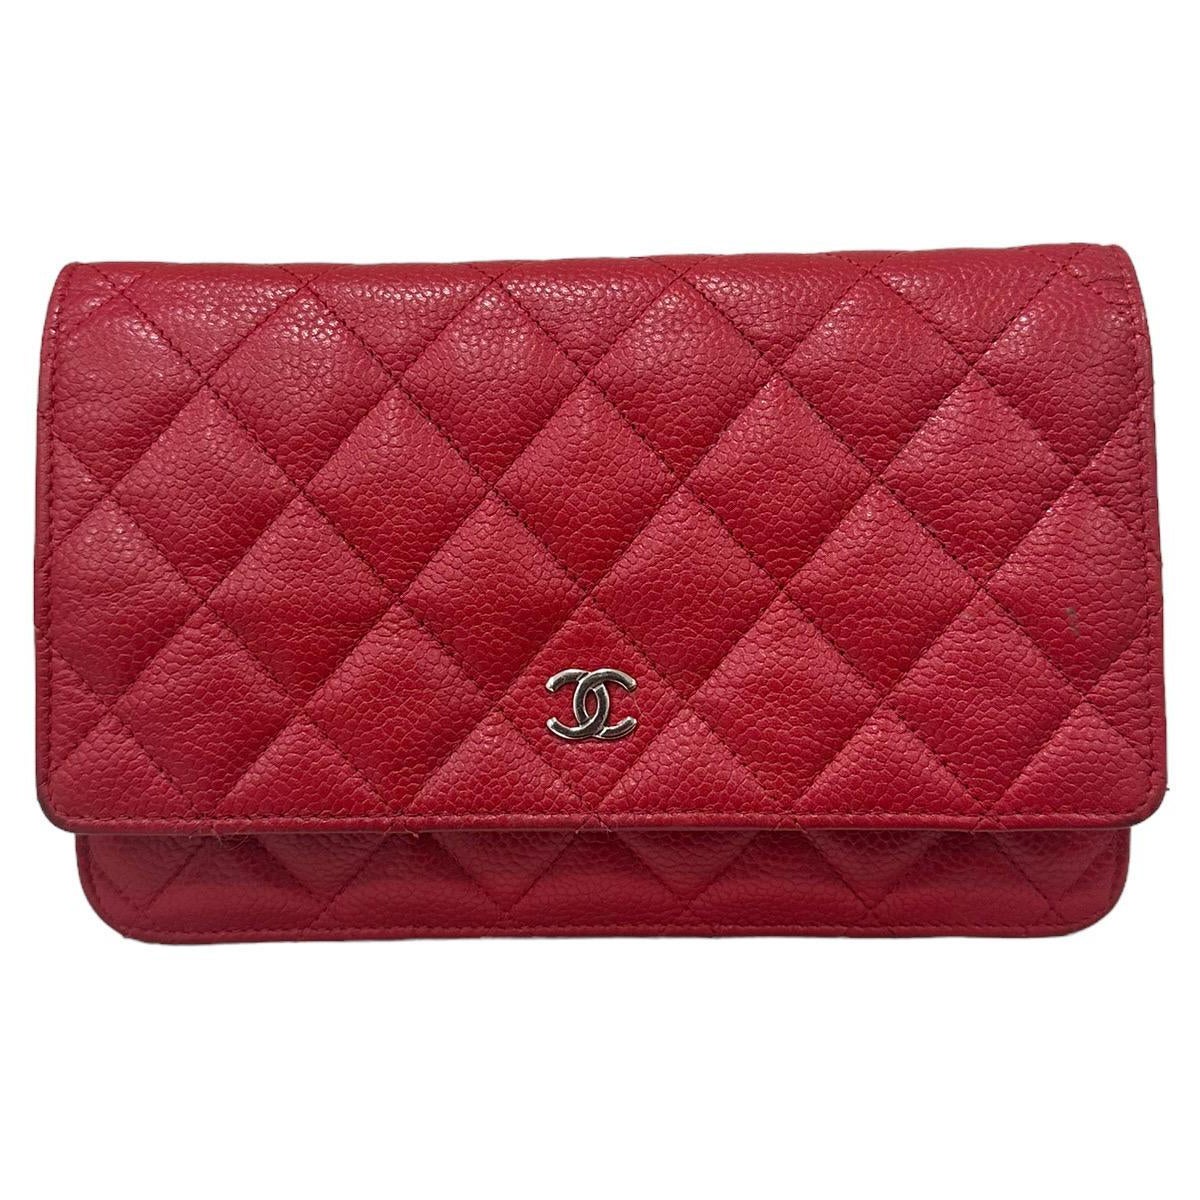 2013 Chanel Woc Caviar Red Crossbody Bag